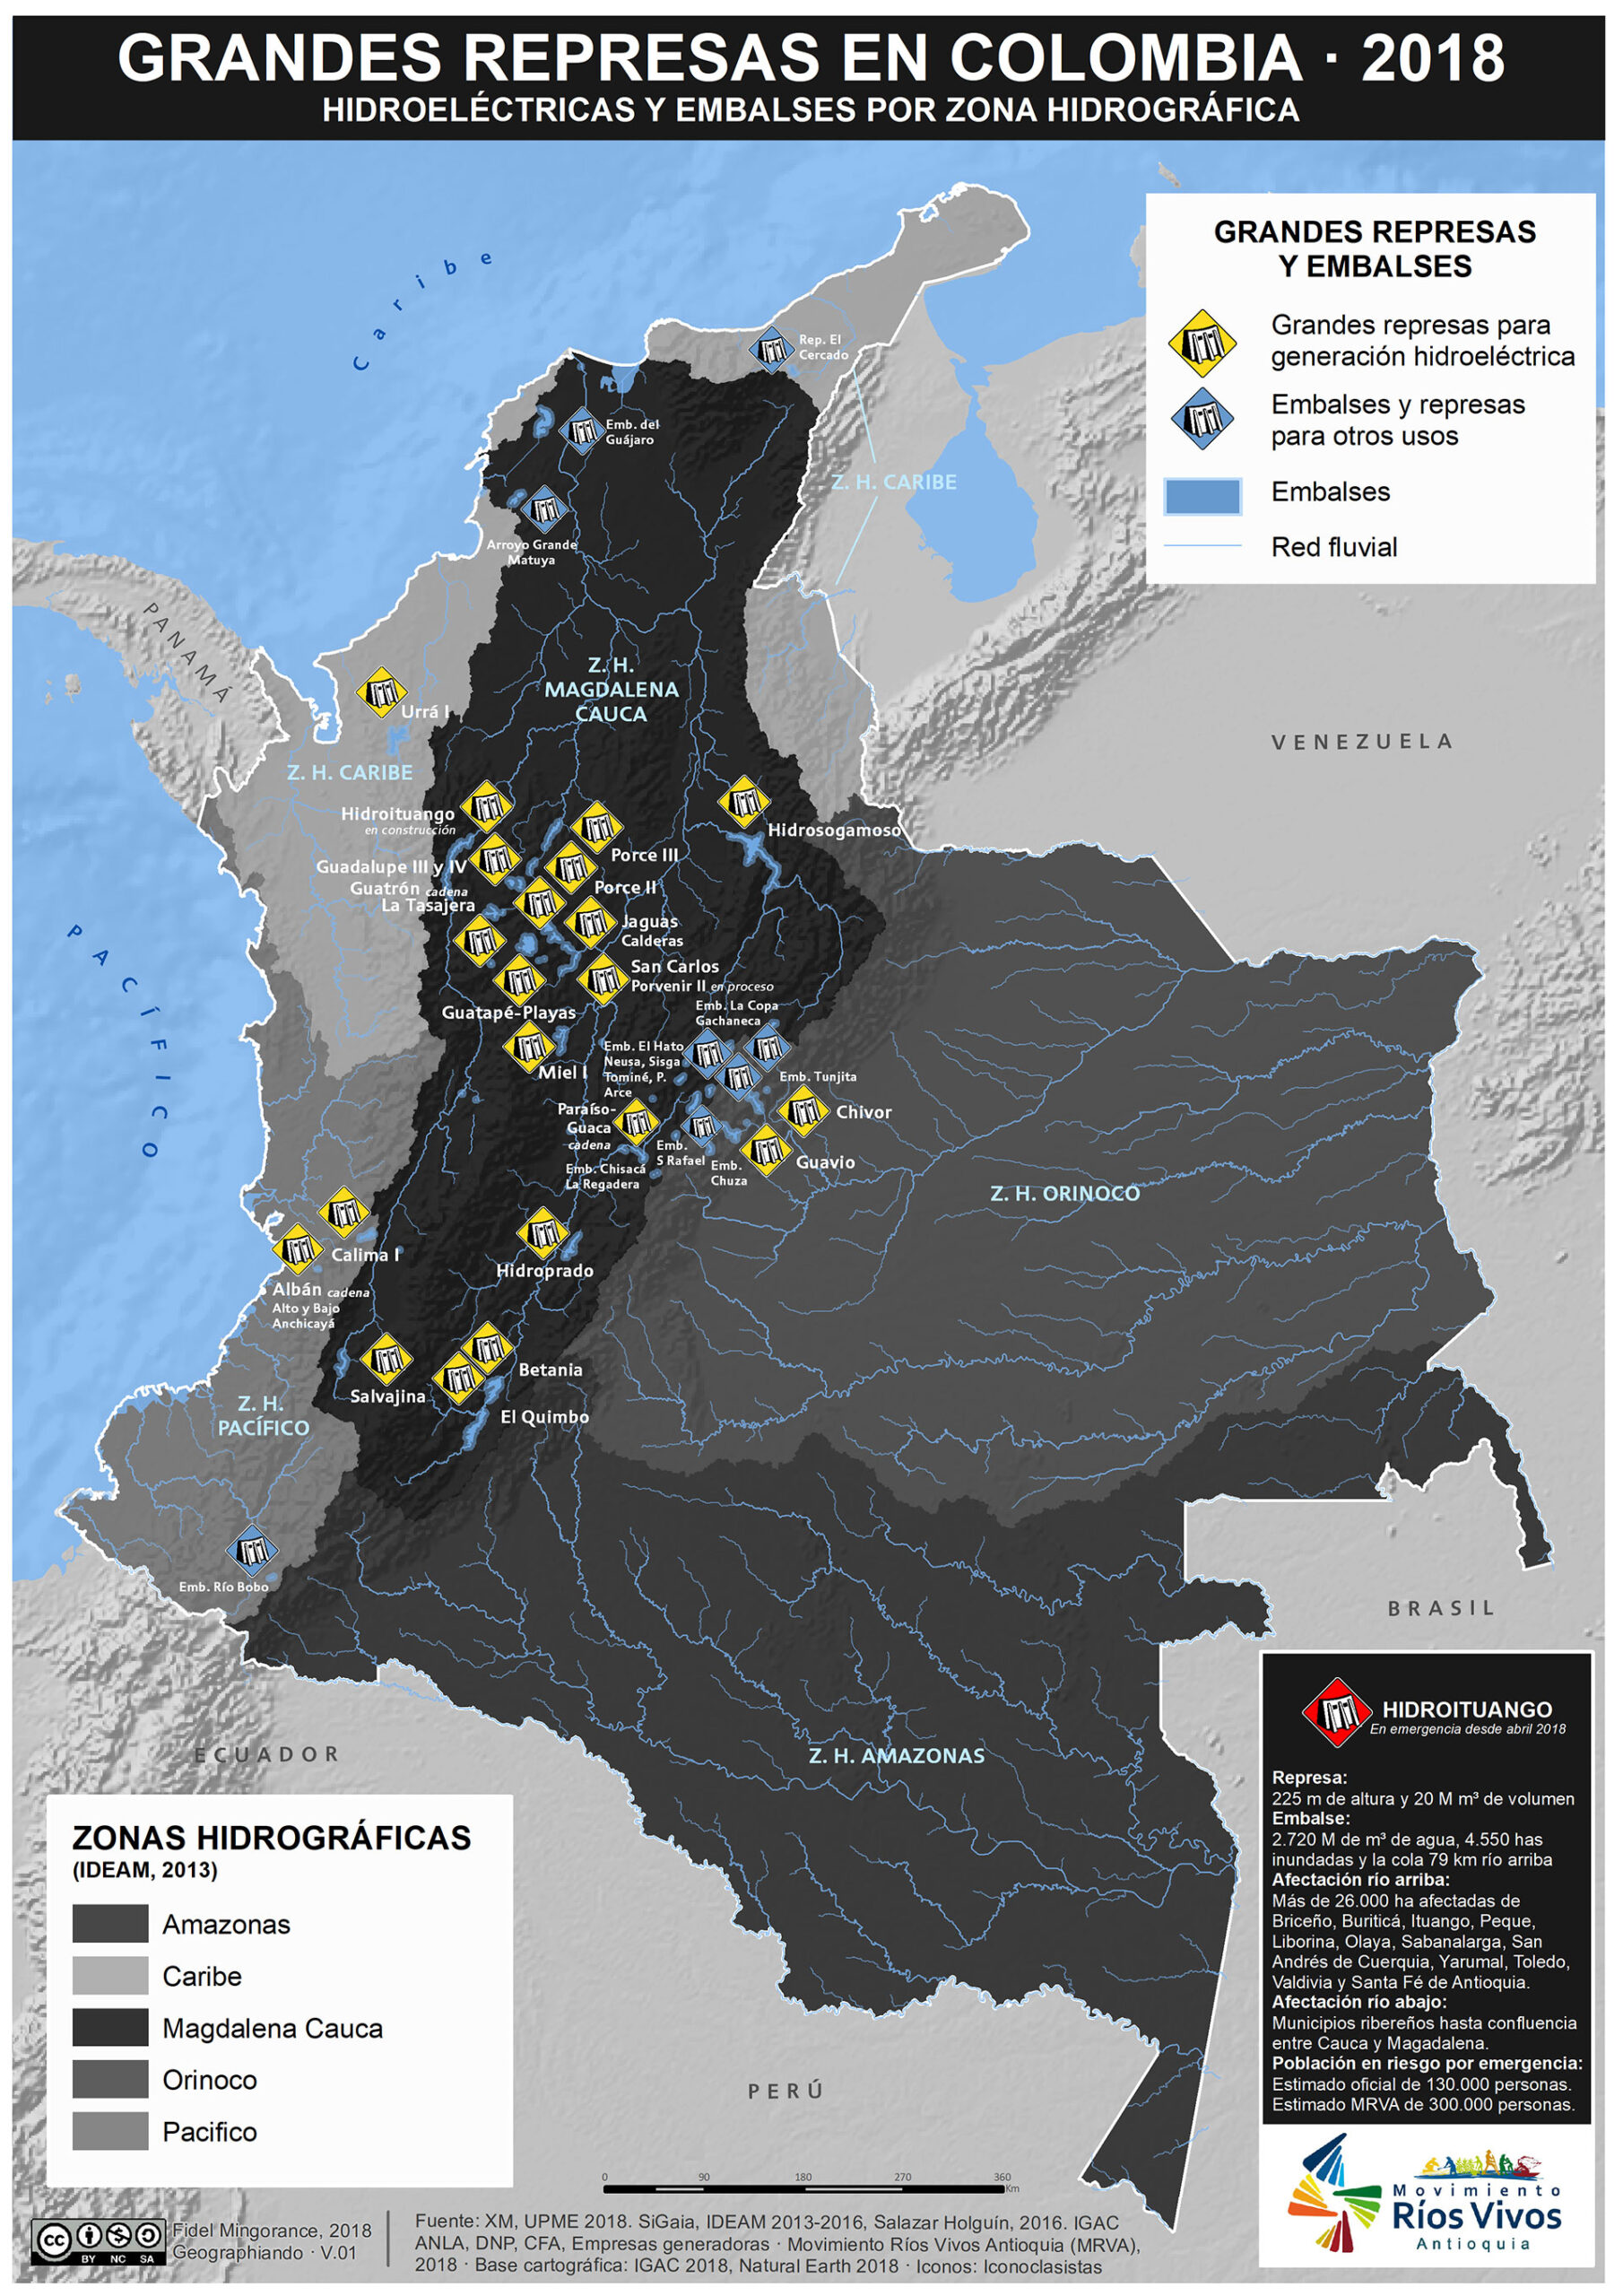 Grandes represas en Colombia (2018)